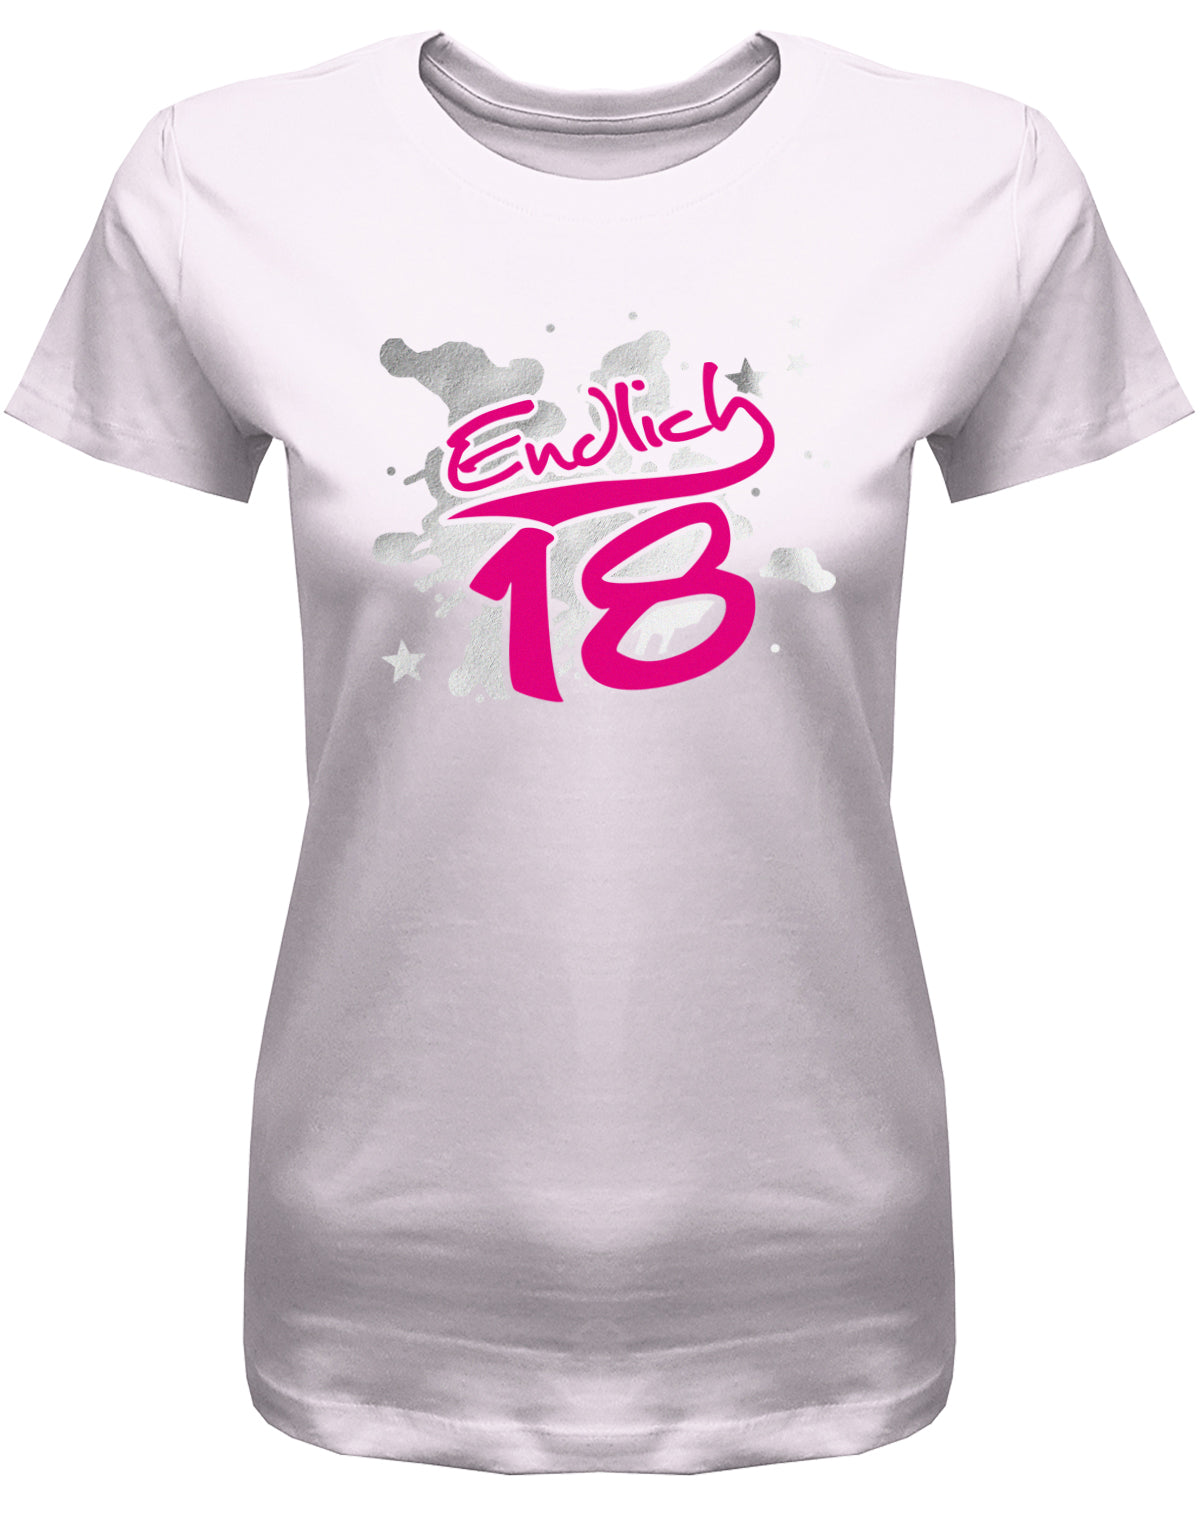 Cooles T-Shirt zum 18. Geburtstag für Mädchen. Bedruckt mit: Endlich 18 in Pink und silbernen Hintergrund. Das T Shirt 18 Geburtstag Mädchen Lustig ist ein tolles Geschenk für alle 18 Jährigen. Geschenk zum 18 geburtstag Frau ✓ 2005 geburtstag Frau ✓ 18 Geburtstag tshirt ✓ shirt geburtstag 18 Rosa